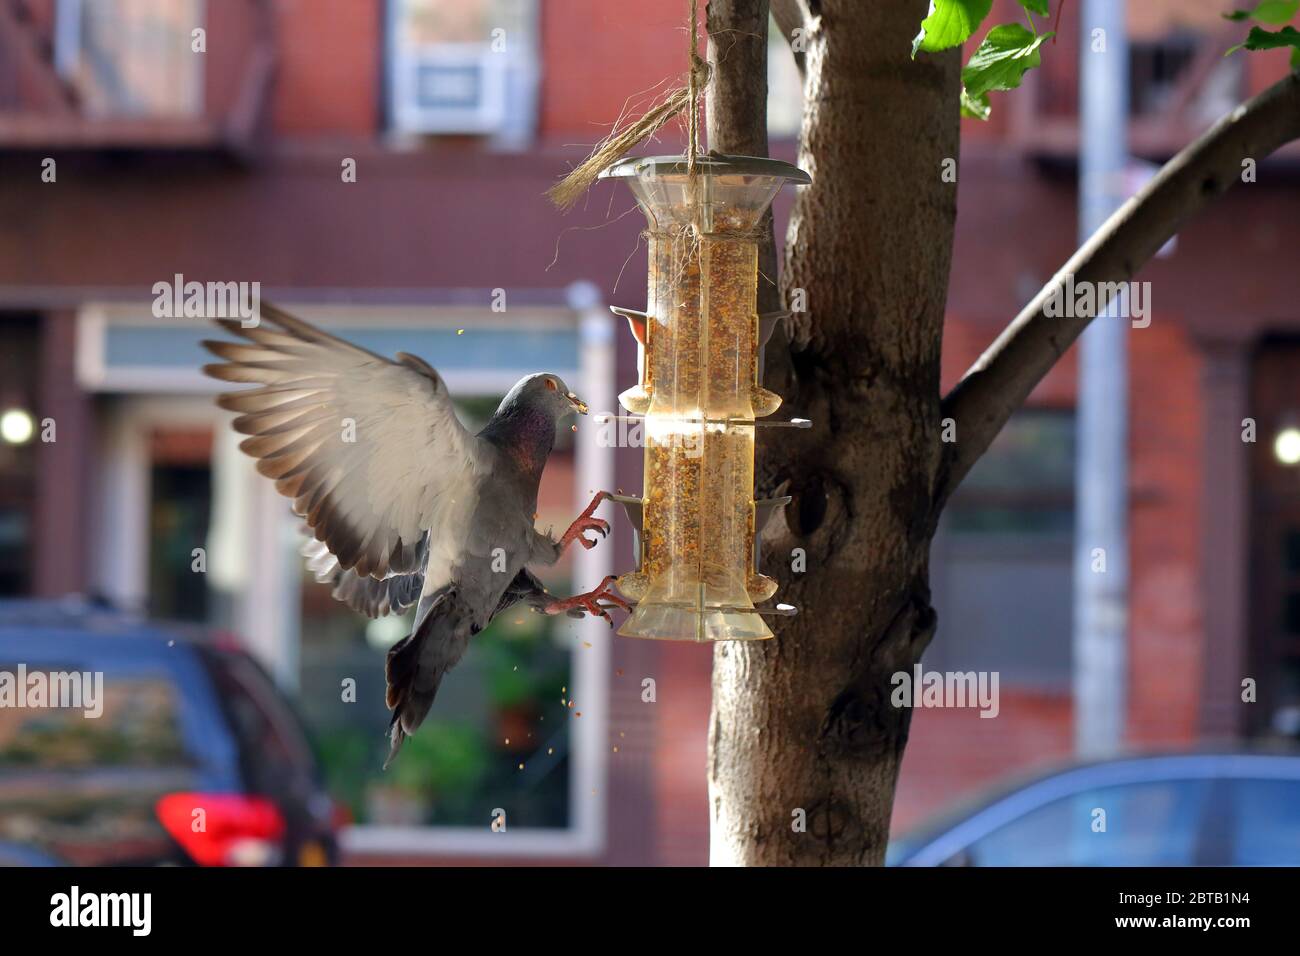 Eine Stadttaube überfällt ein kleines Vogelfutter für seine Vogelsamen. Stockfoto